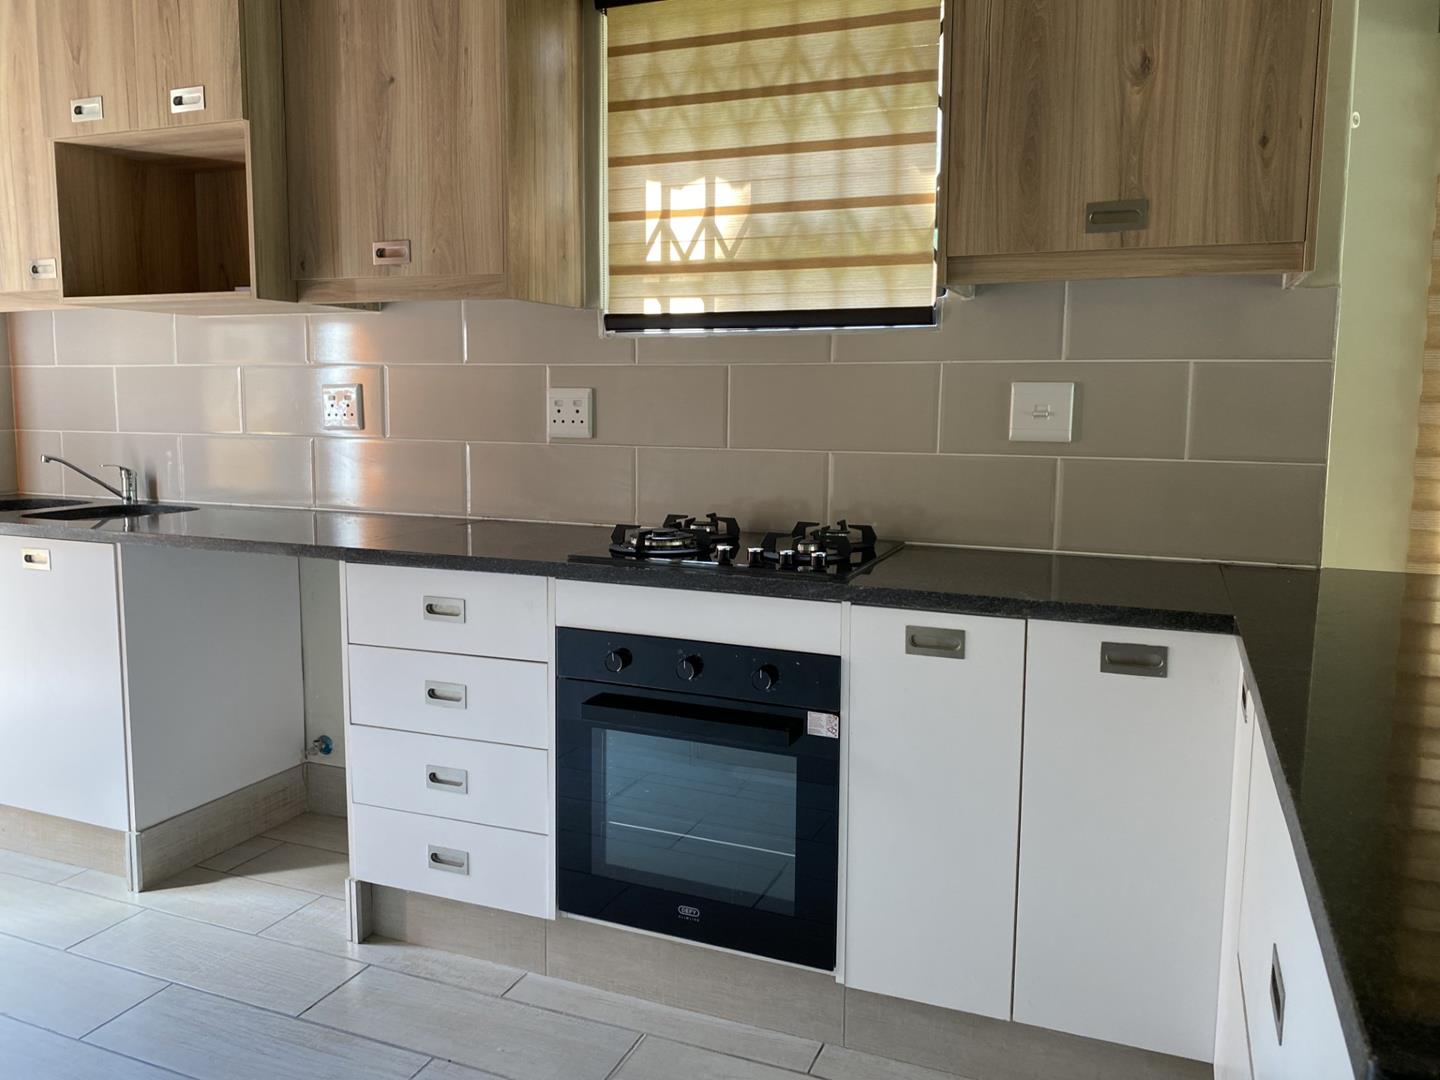 To Let 2 Bedroom Property for Rent in Glen Austin Gauteng